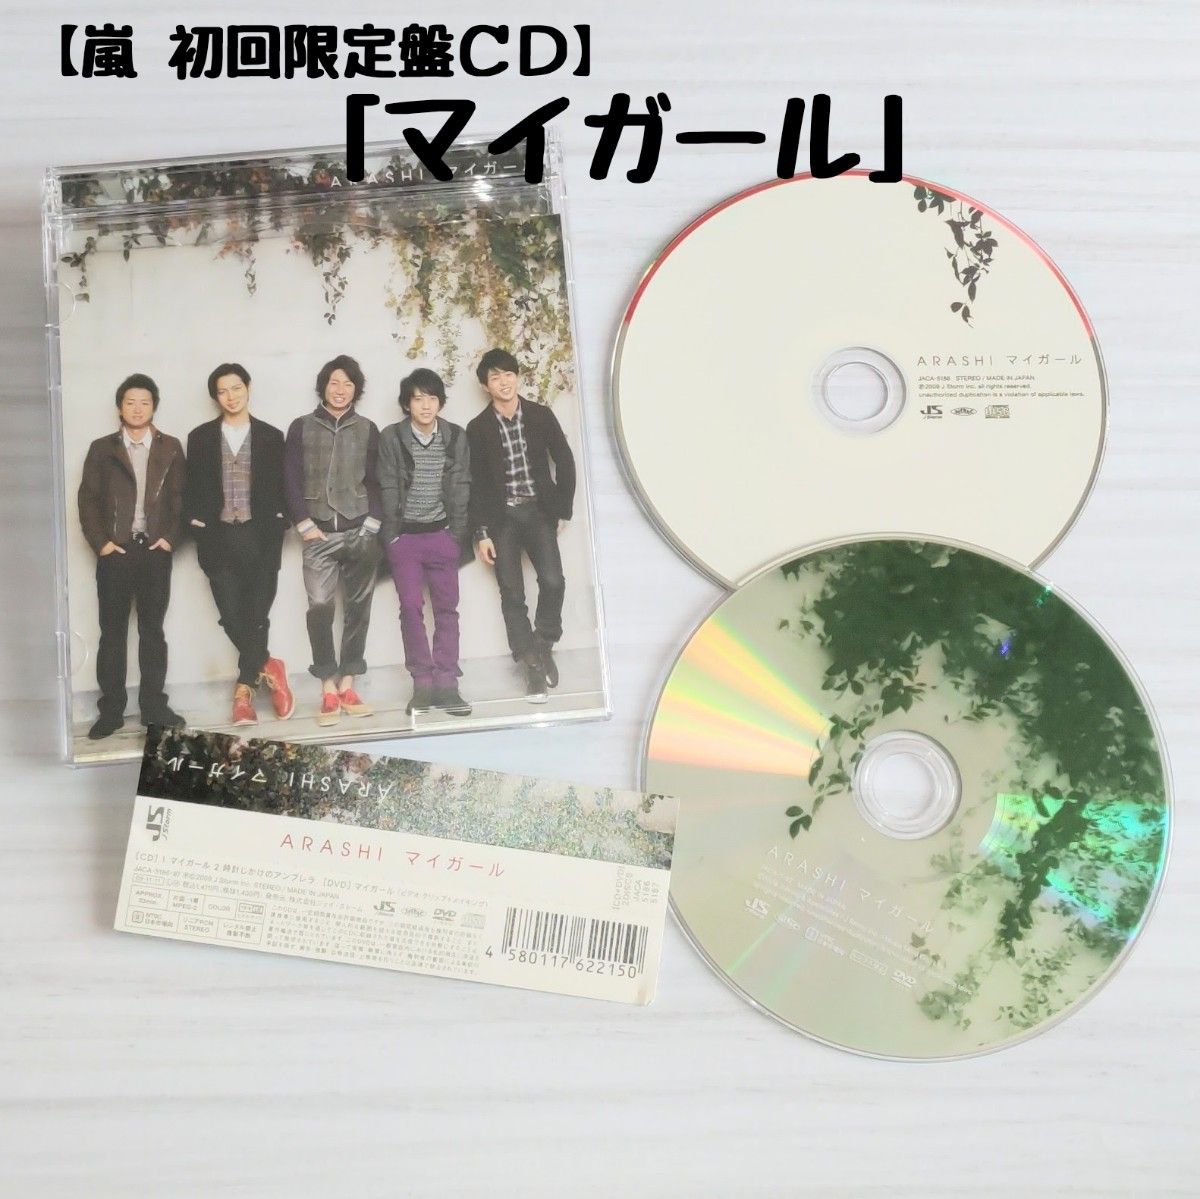 嵐「マイガール」初回限定盤CD